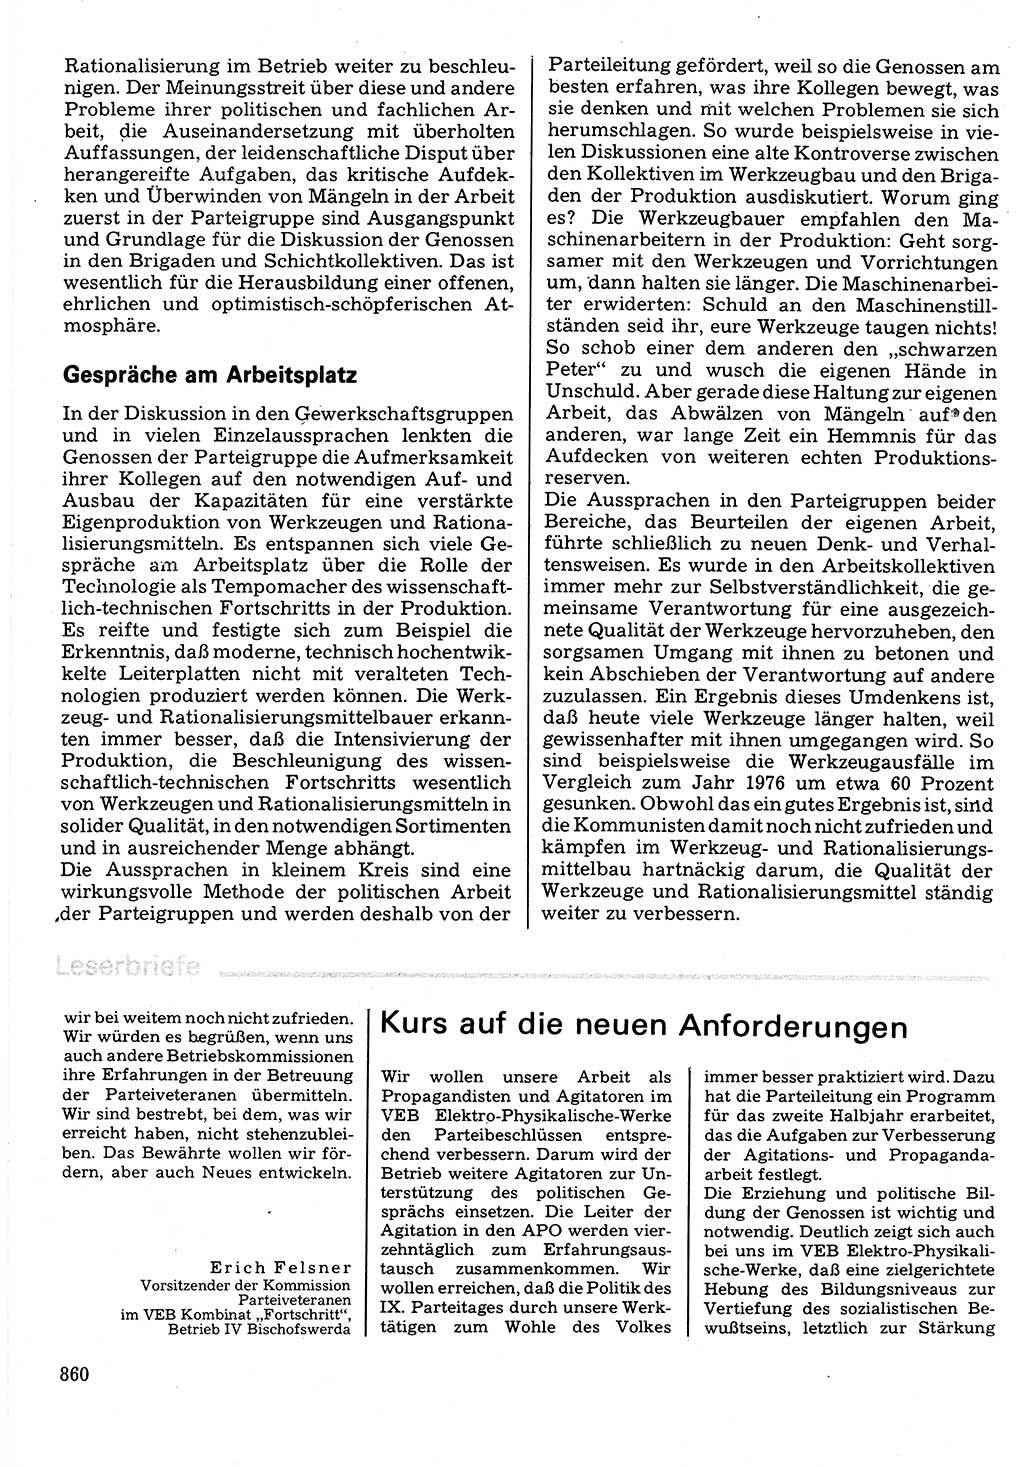 Neuer Weg (NW), Organ des Zentralkomitees (ZK) der SED (Sozialistische Einheitspartei Deutschlands) für Fragen des Parteilebens, 32. Jahrgang [Deutsche Demokratische Republik (DDR)] 1977, Seite 860 (NW ZK SED DDR 1977, S. 860)